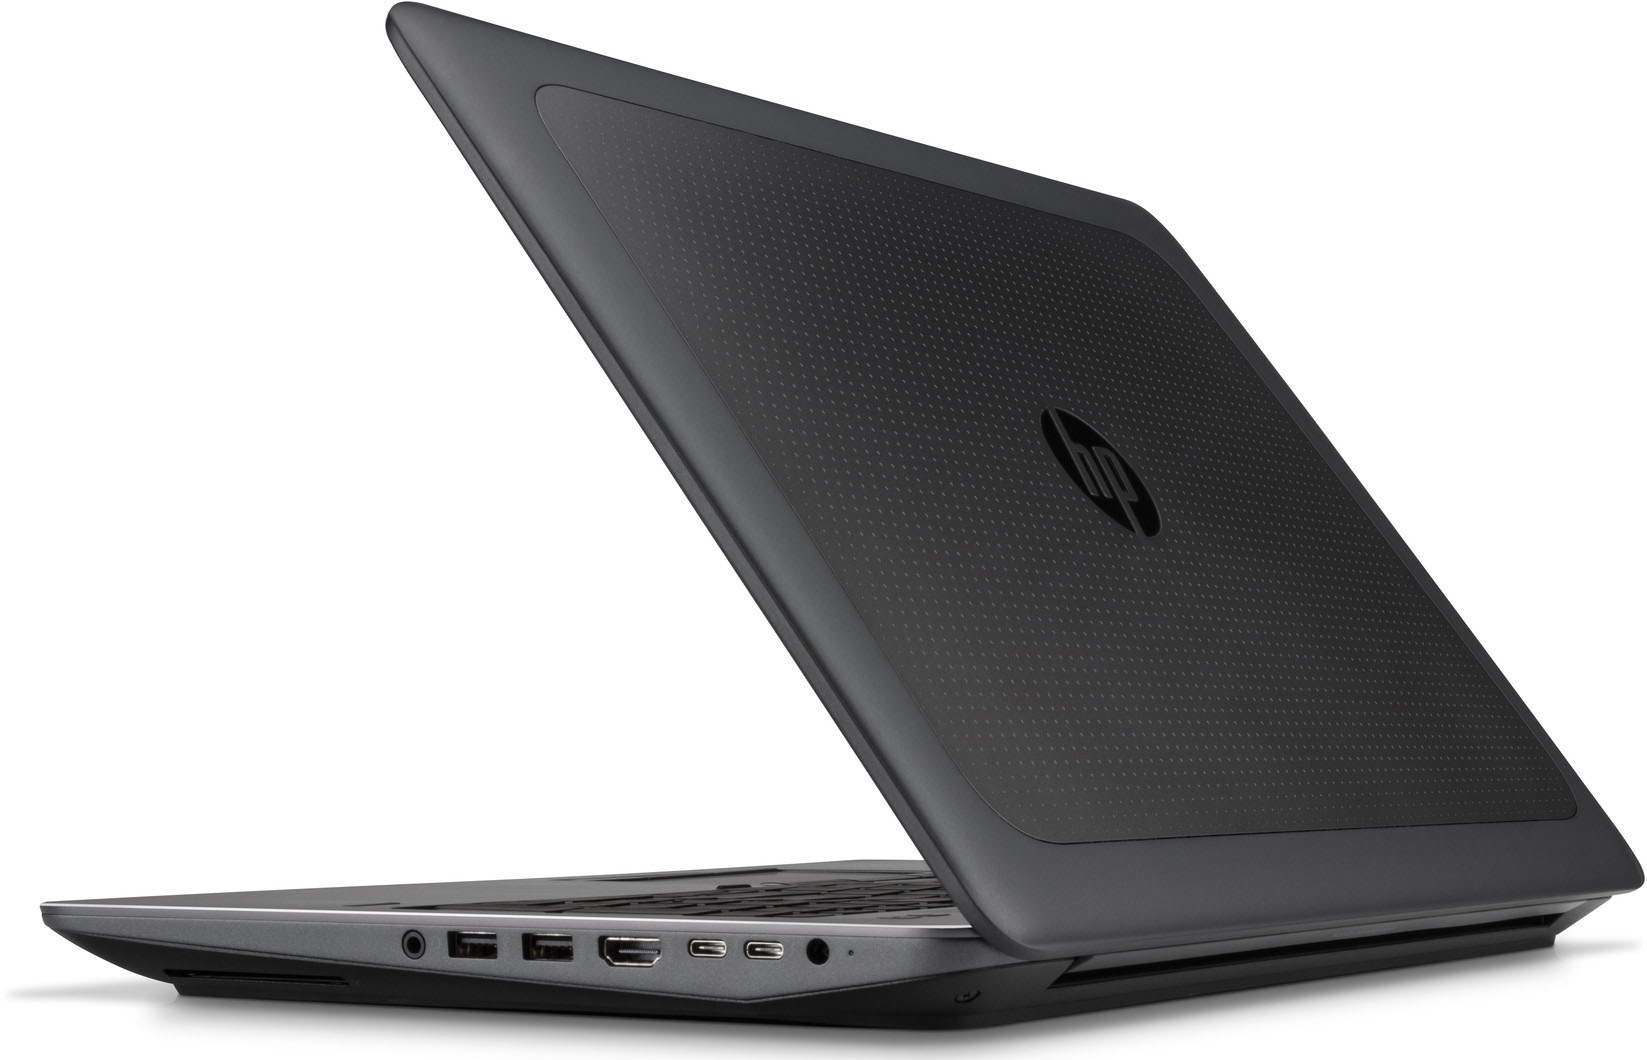 HP ZBook 15 G3 - E3-1505M v5 · NVIDIA Quadro M2000M · 15.6”, Full